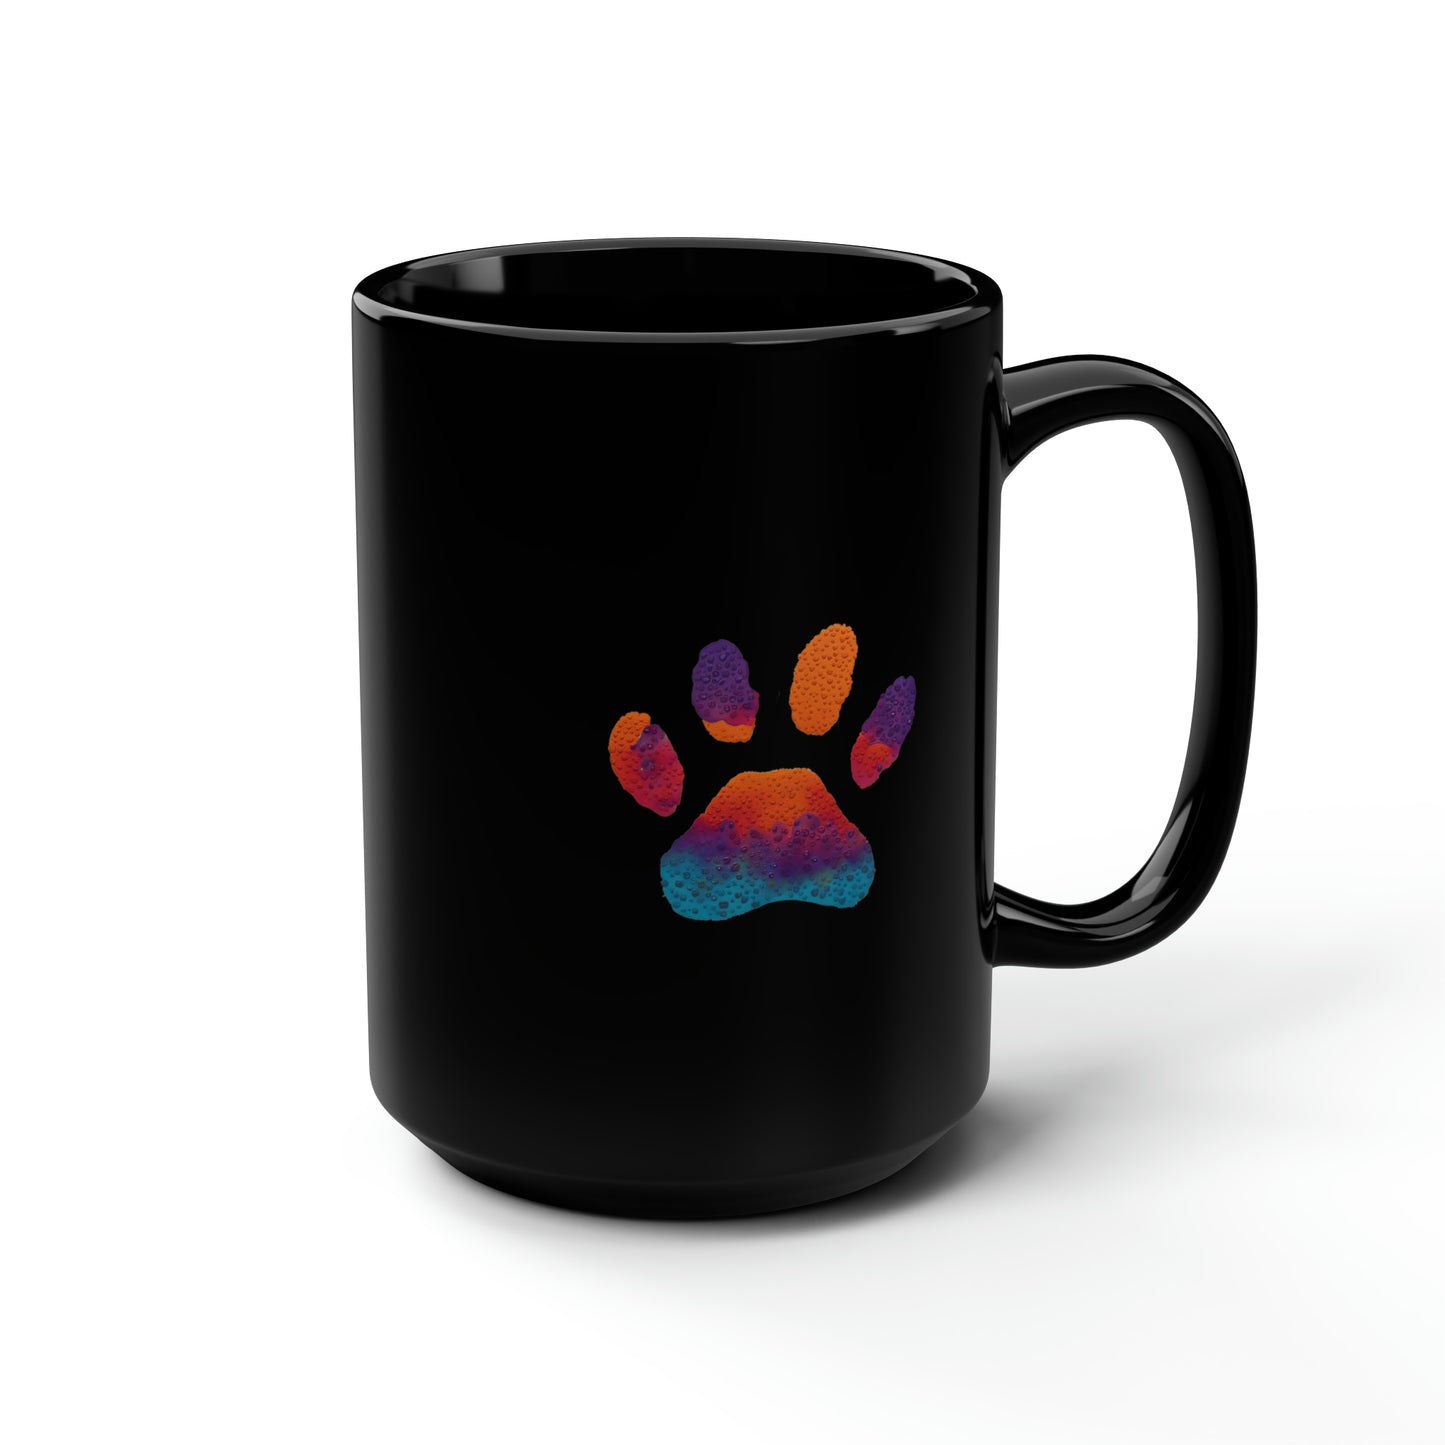 Paw Print Black Ceramic Coffee Mug, 15oz